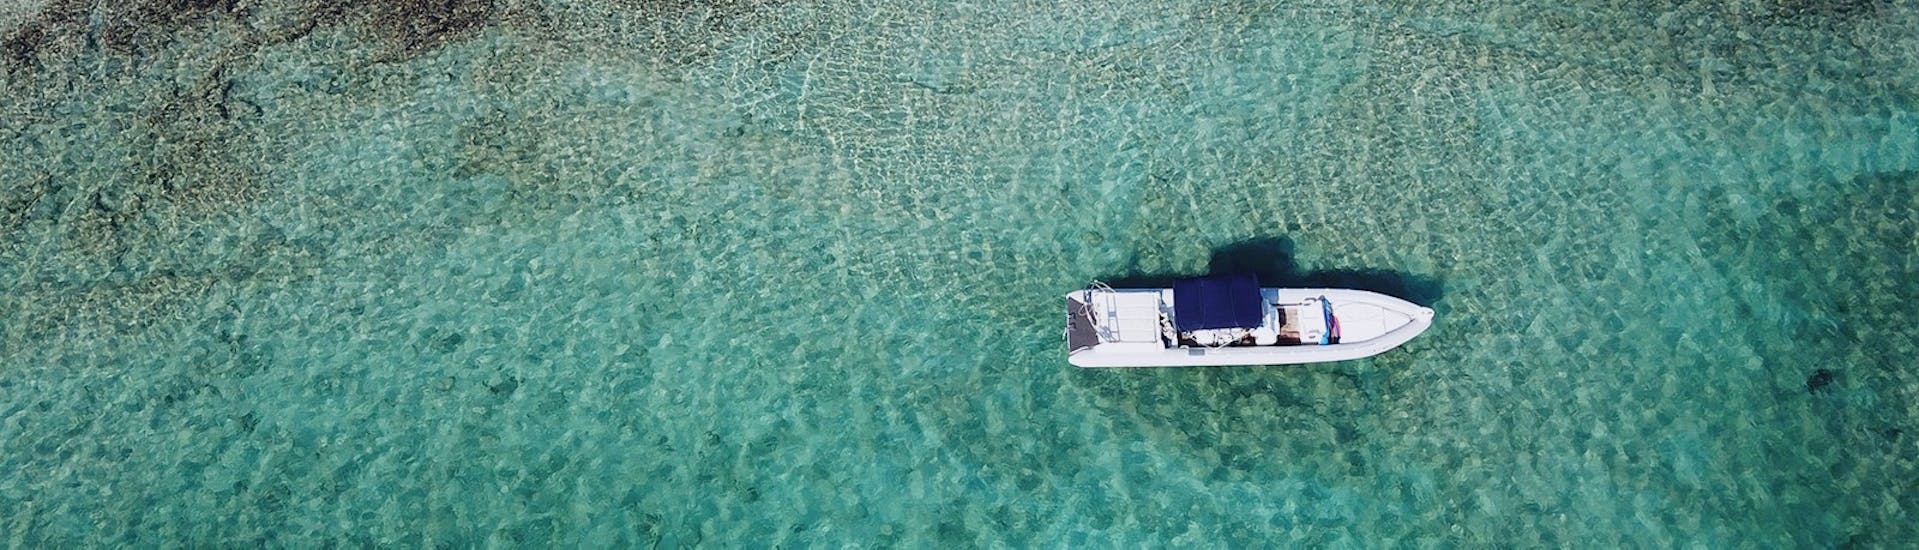 Balade privée en bateau semi-rigide dans le nord-ouest de la Crète.